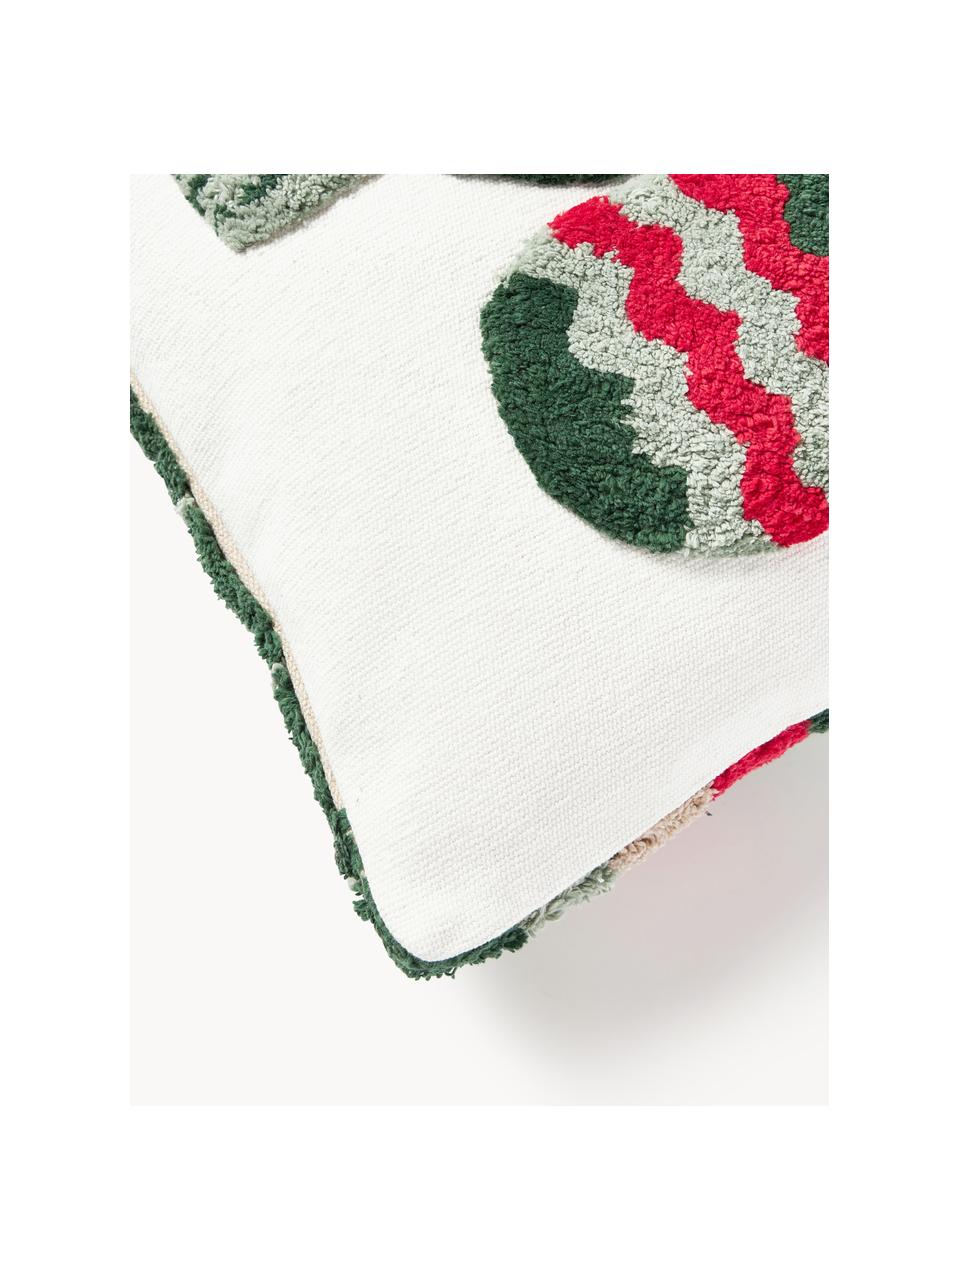 Dwustronna poszewka na poduszkę Nathaniel, 100% bawełna, Czerwony, zielony, S 45 x D 45 cm